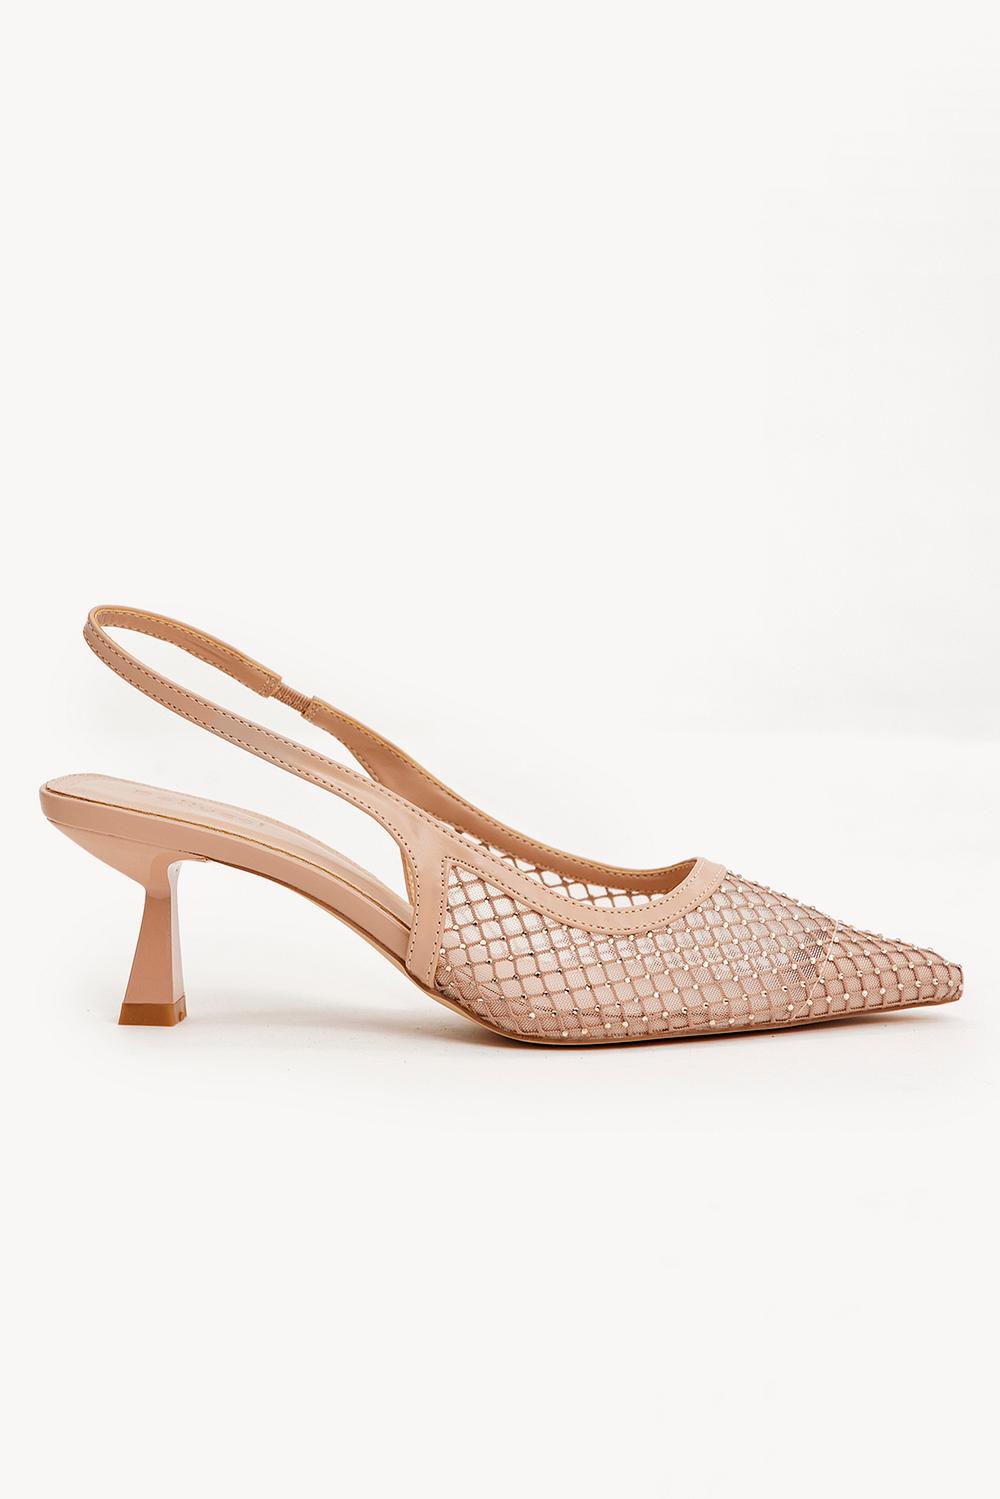 Beige heels with mesh details